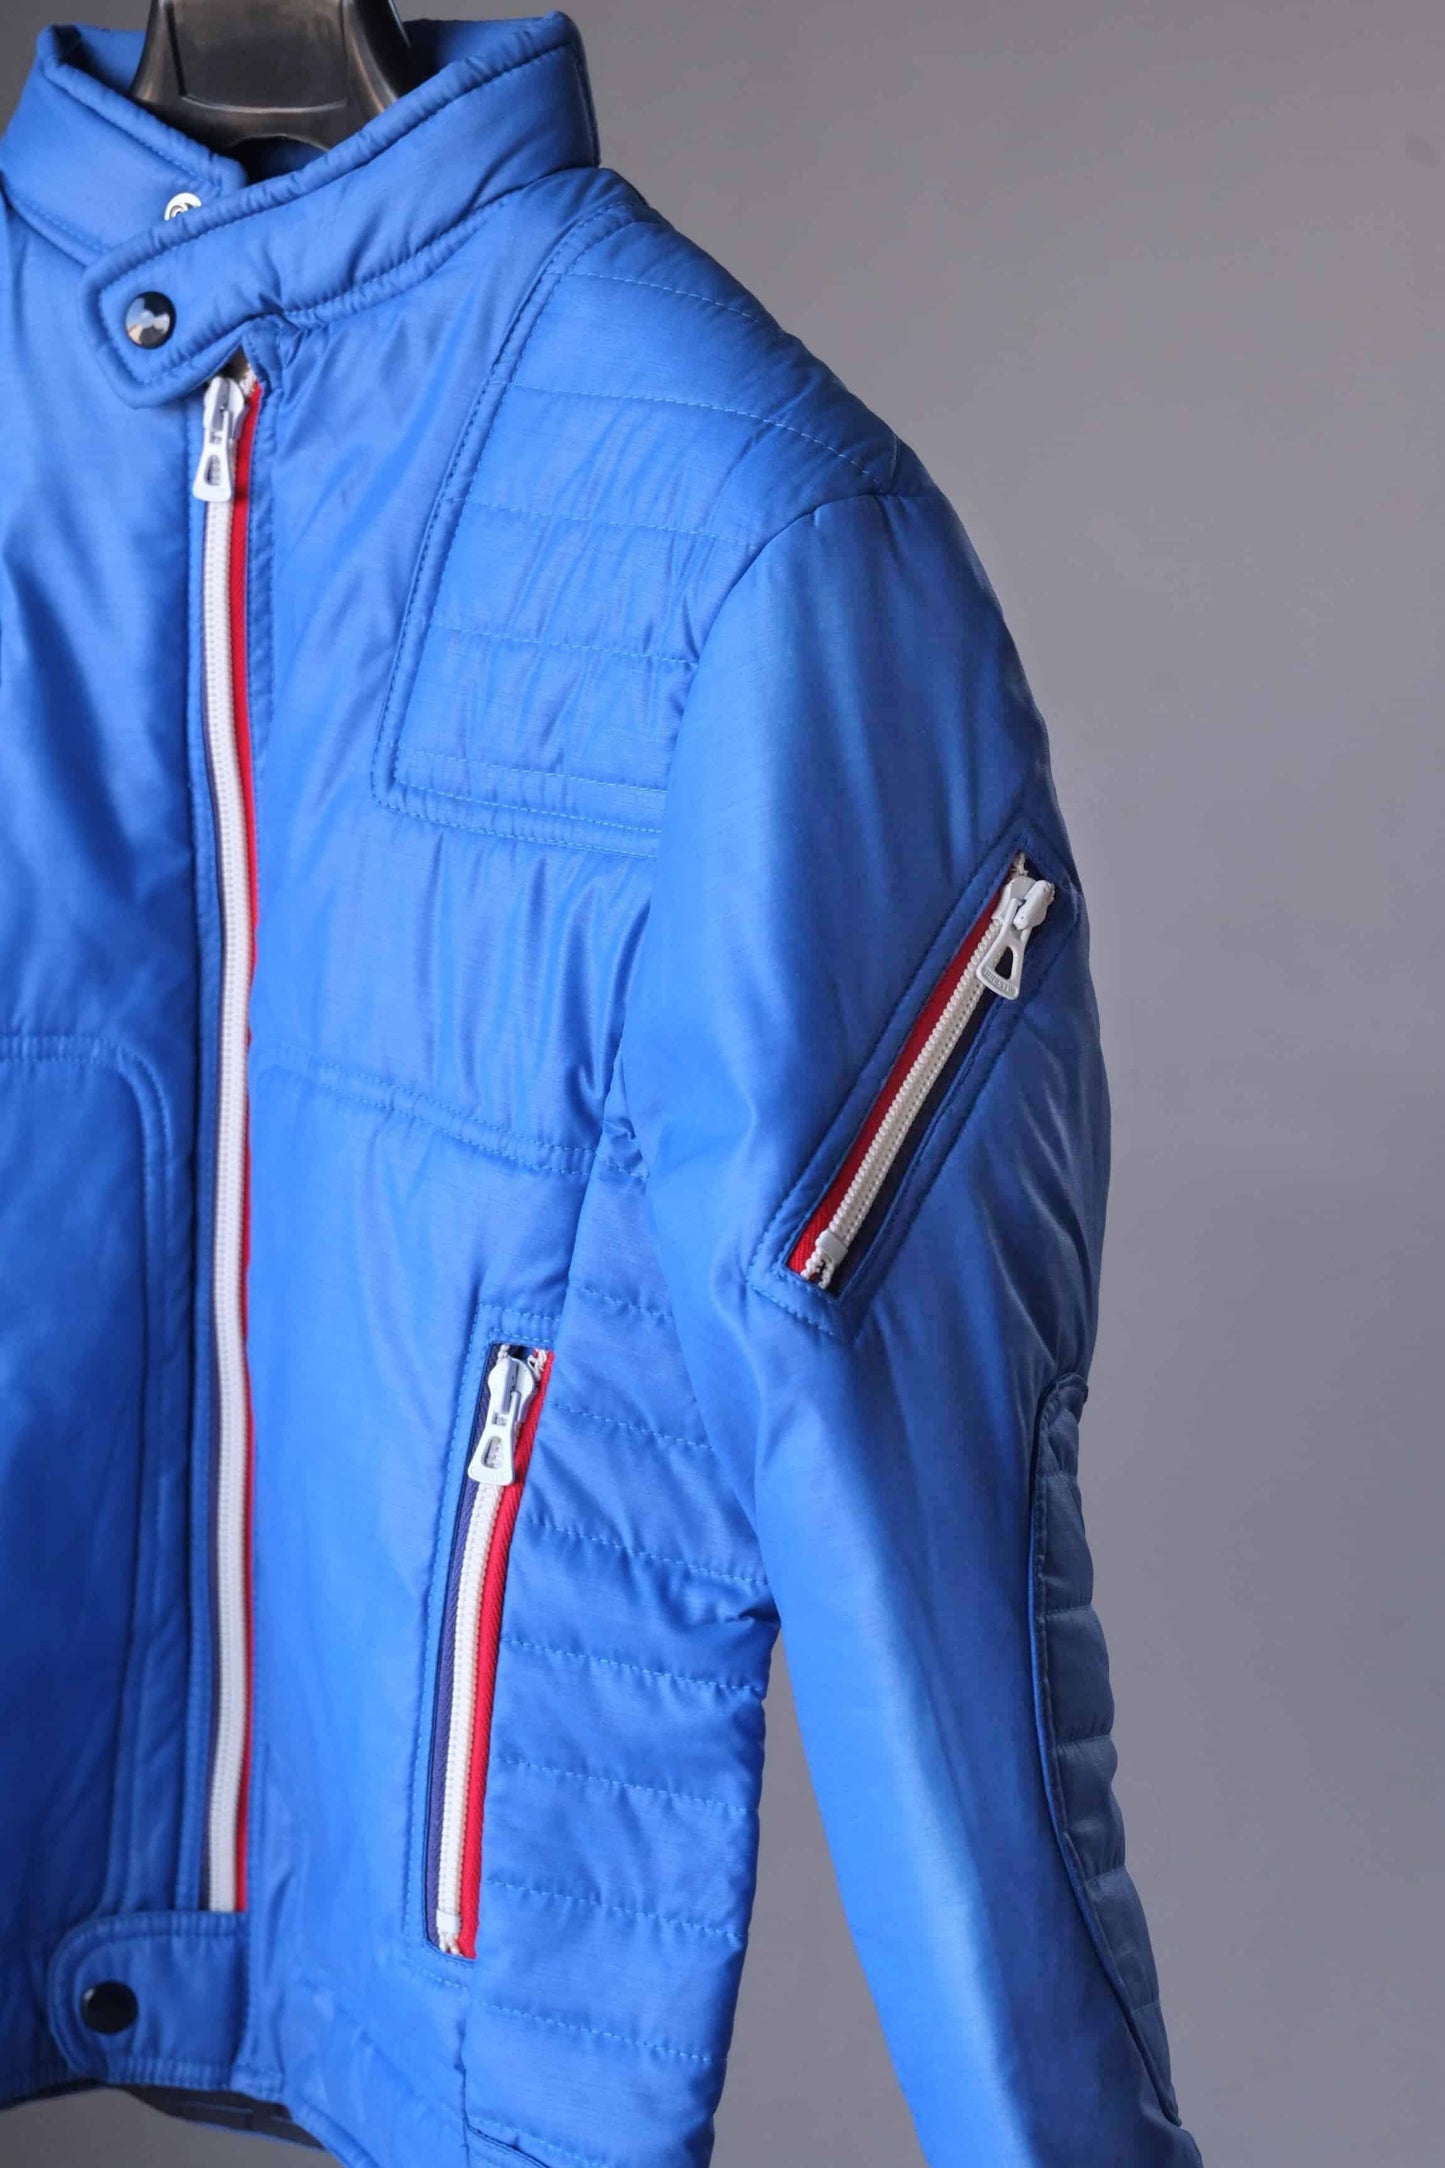 Vintage 70's Ski Jacket details